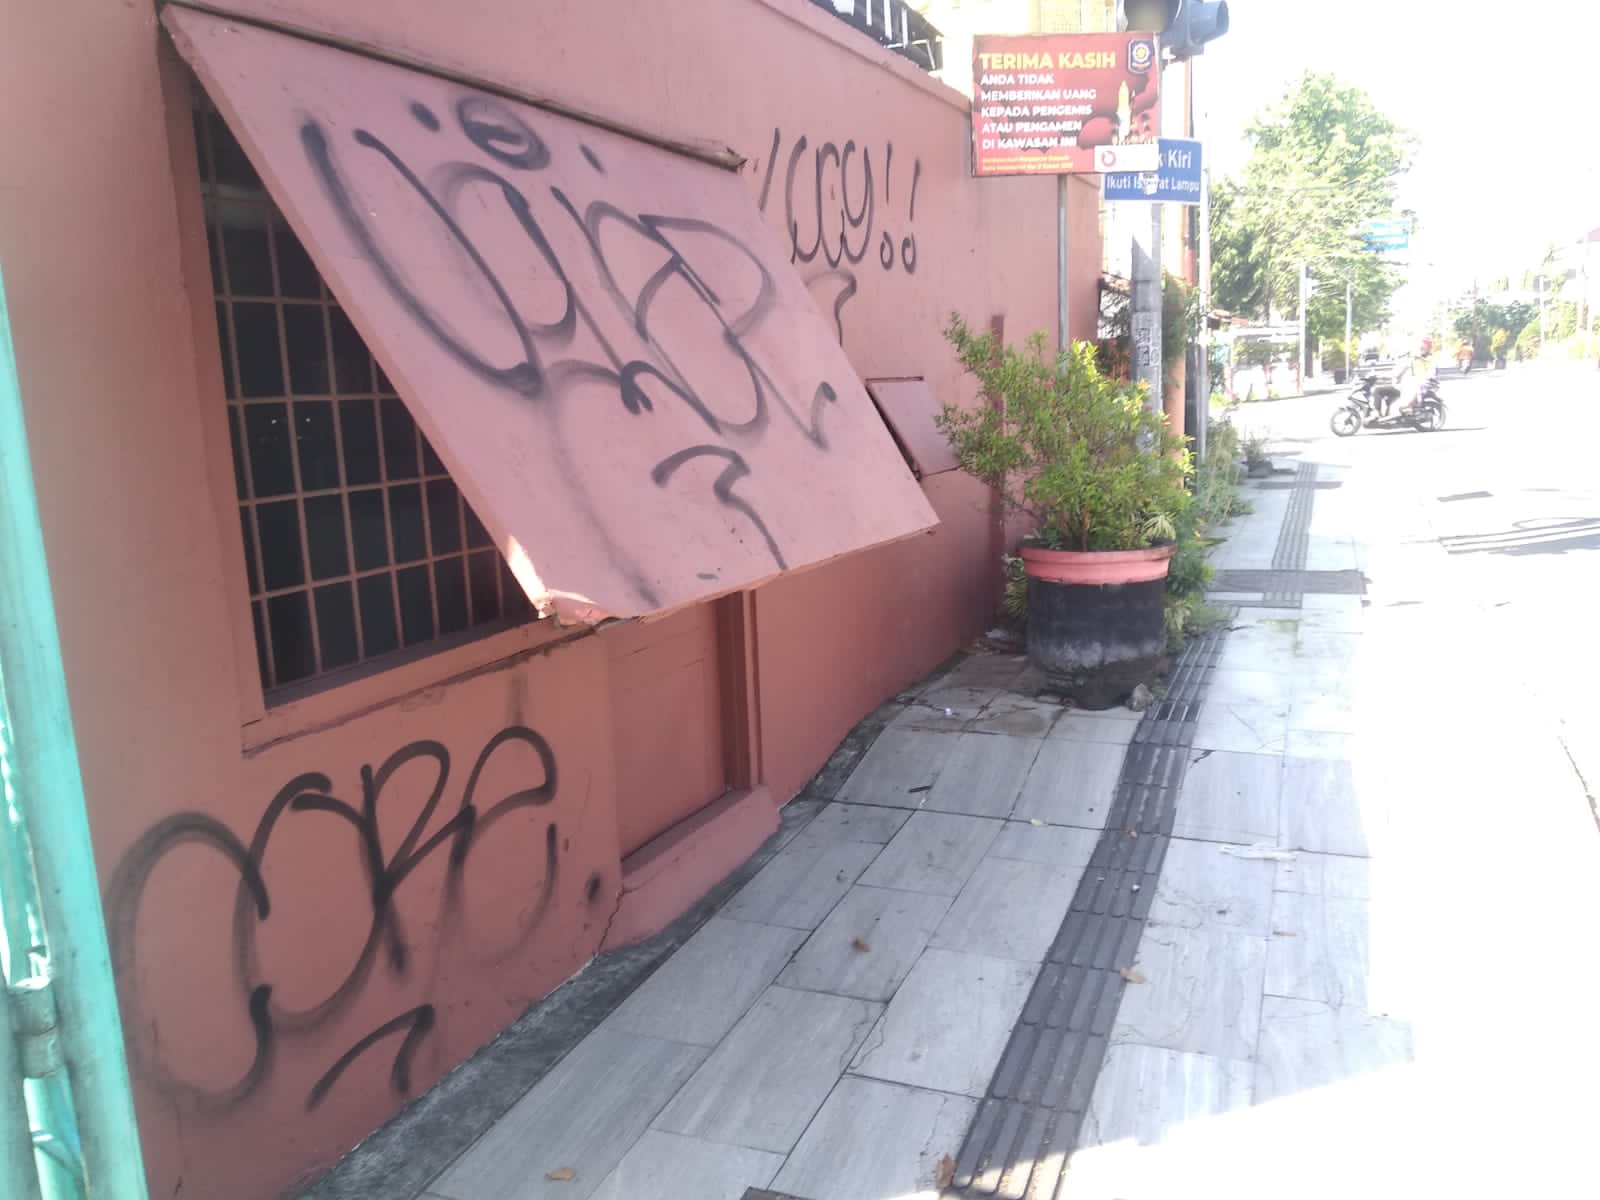 Aksi Vandalisme Marak di Kota Mojokerto, Satpol PP Tracing Pelaku Lewat CCTV